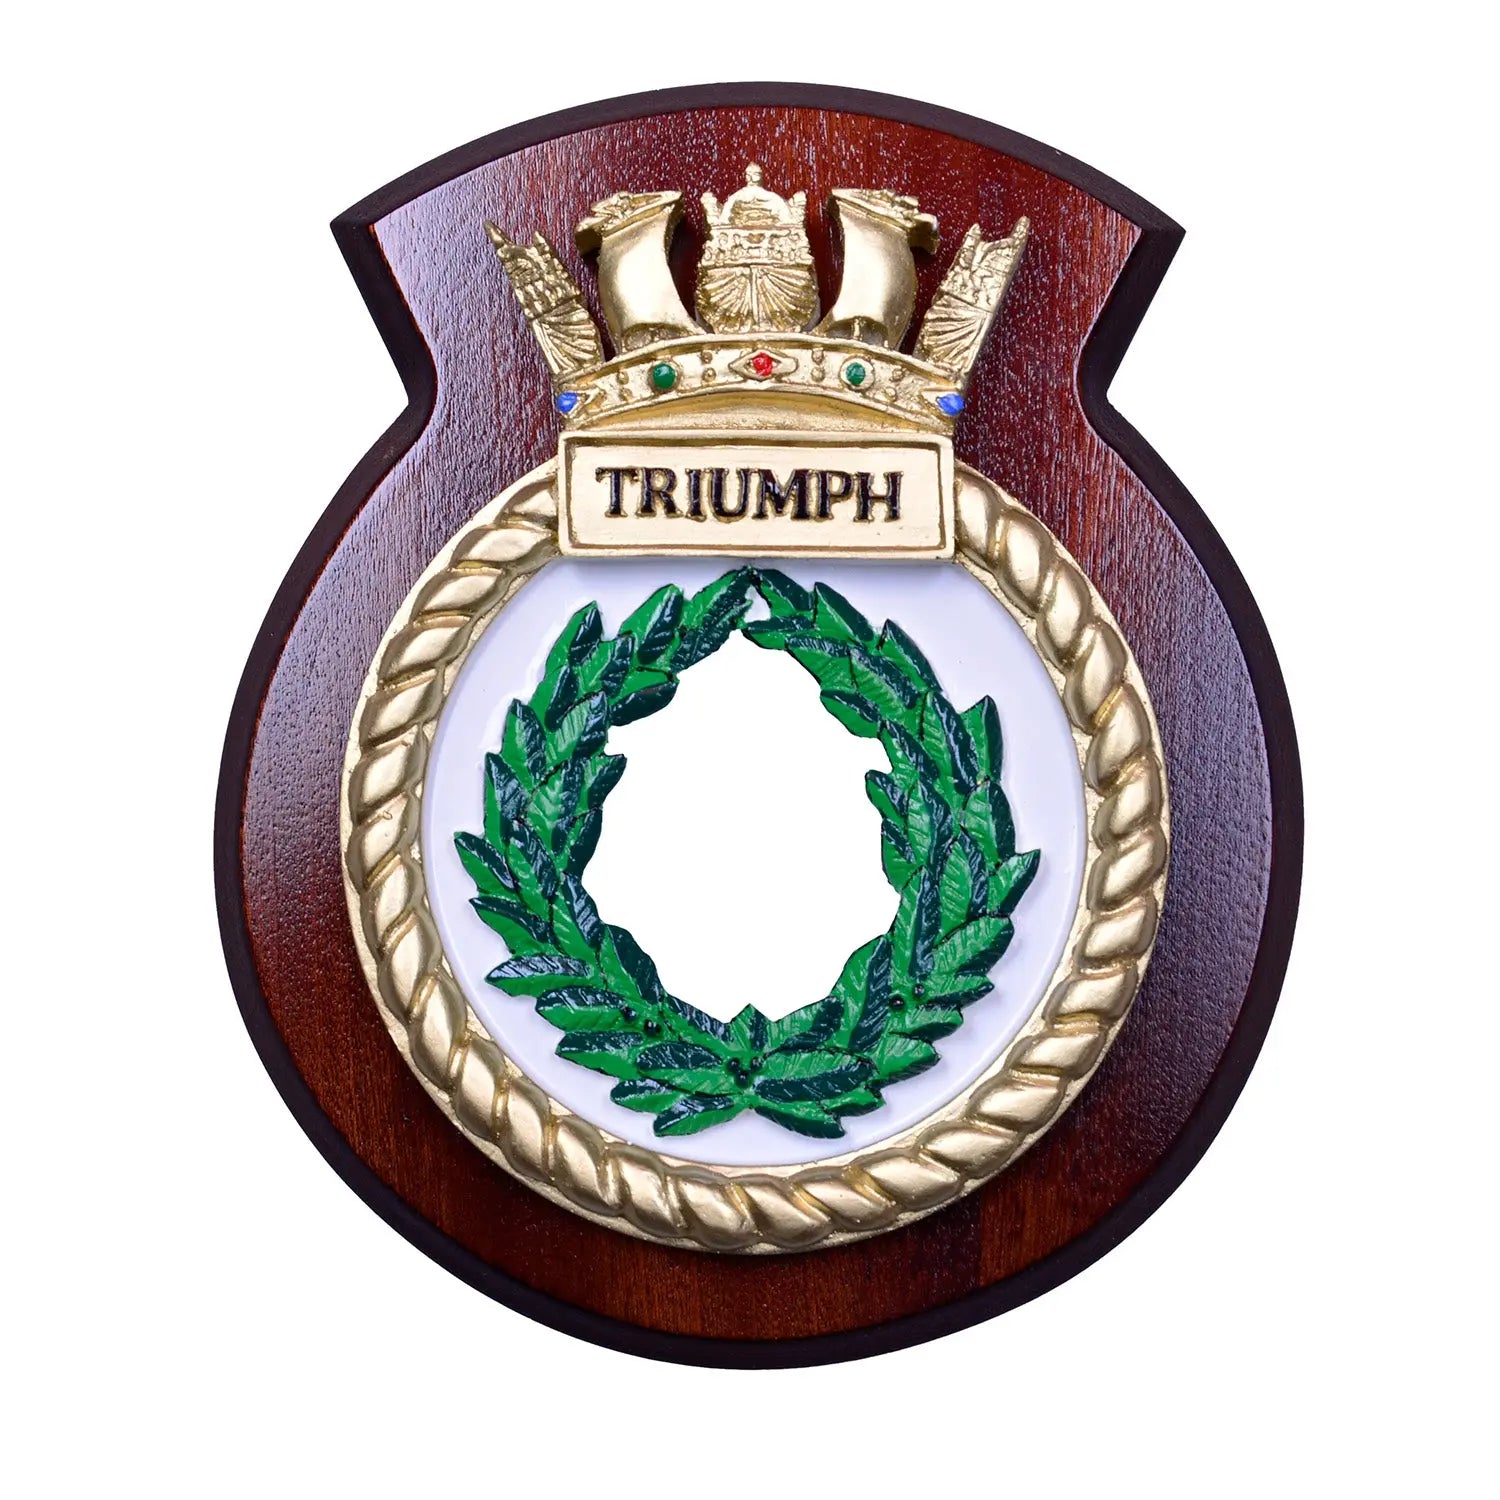 HMS Triumph Ship Crest / Plaque wyedean